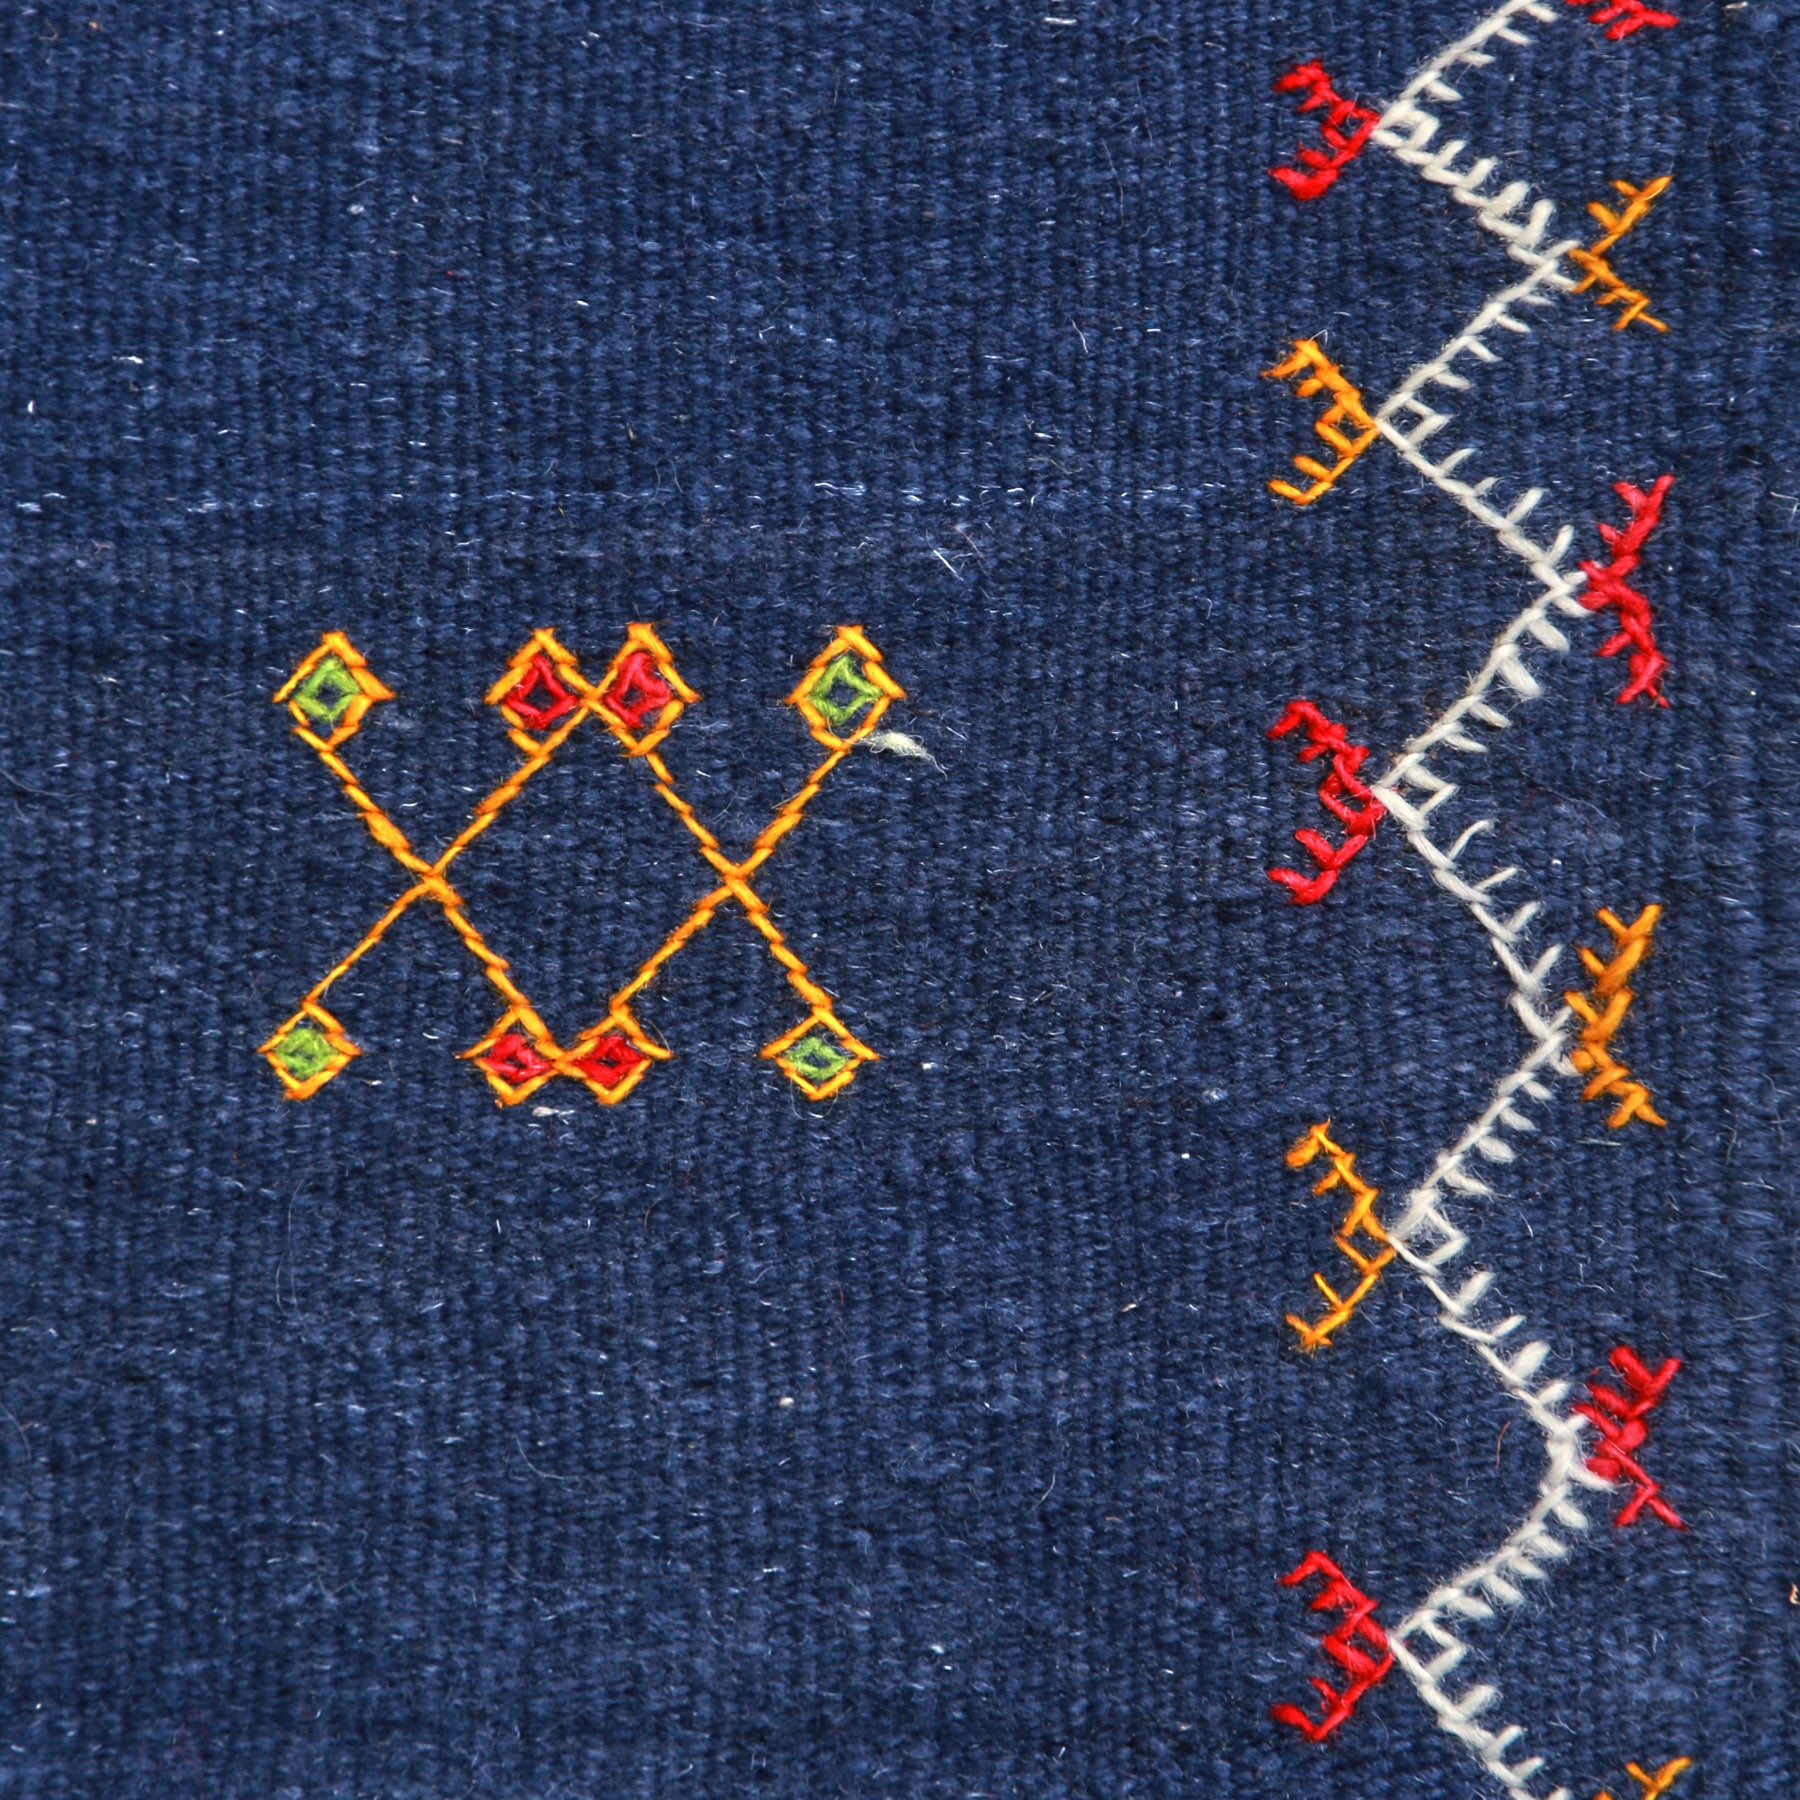 dettaglio di un simbolo amazigh e della cornice ricamata su un tappeto artigianale marocchino a tessitura piatta